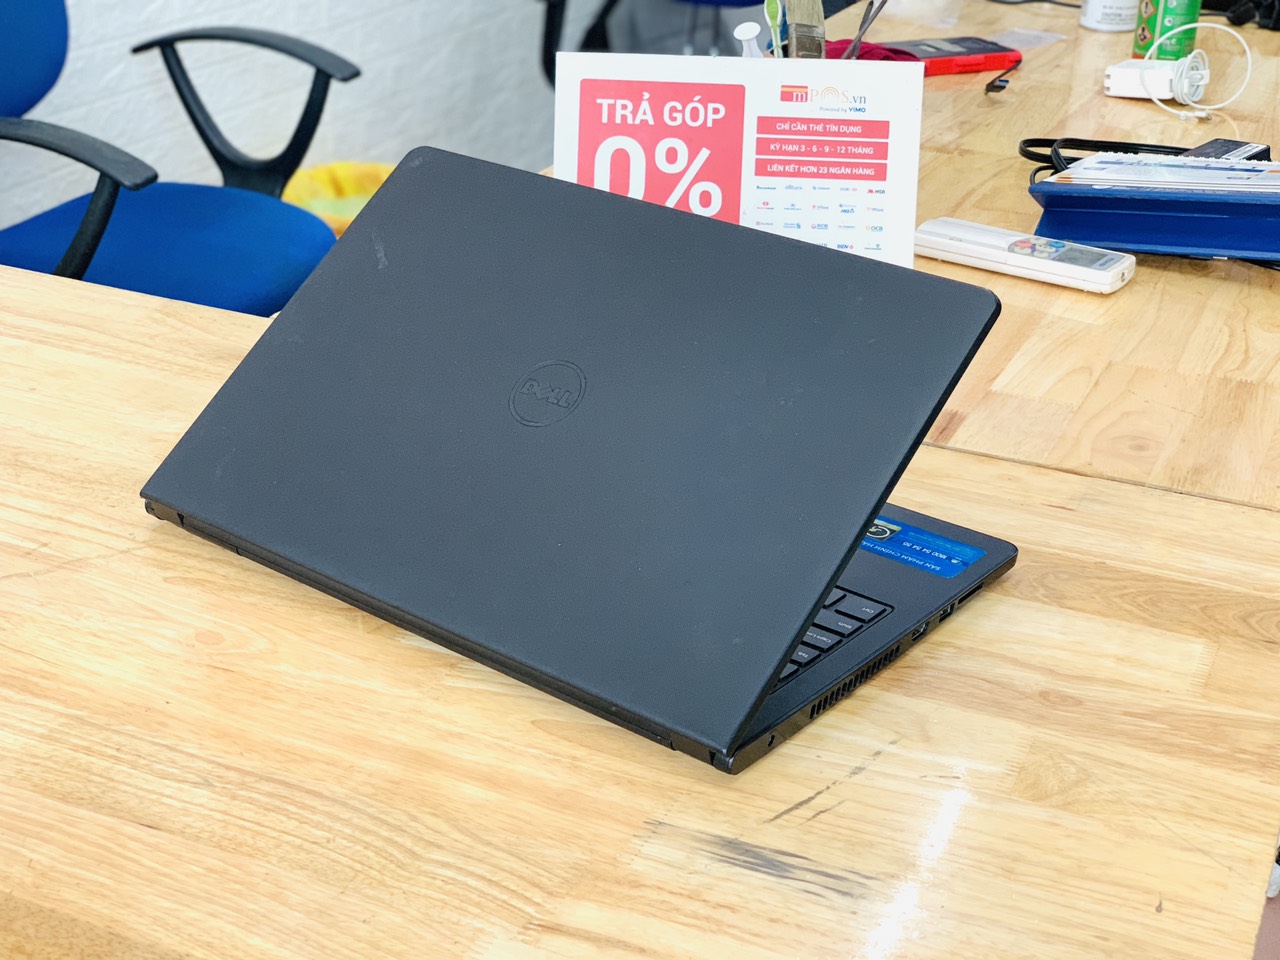 Laptop Dell Inspiron 3551 Celeron N2840 Ram 4GB SSD 128GB 15.6 inch Mỏng Đẹp Giá Rẻ